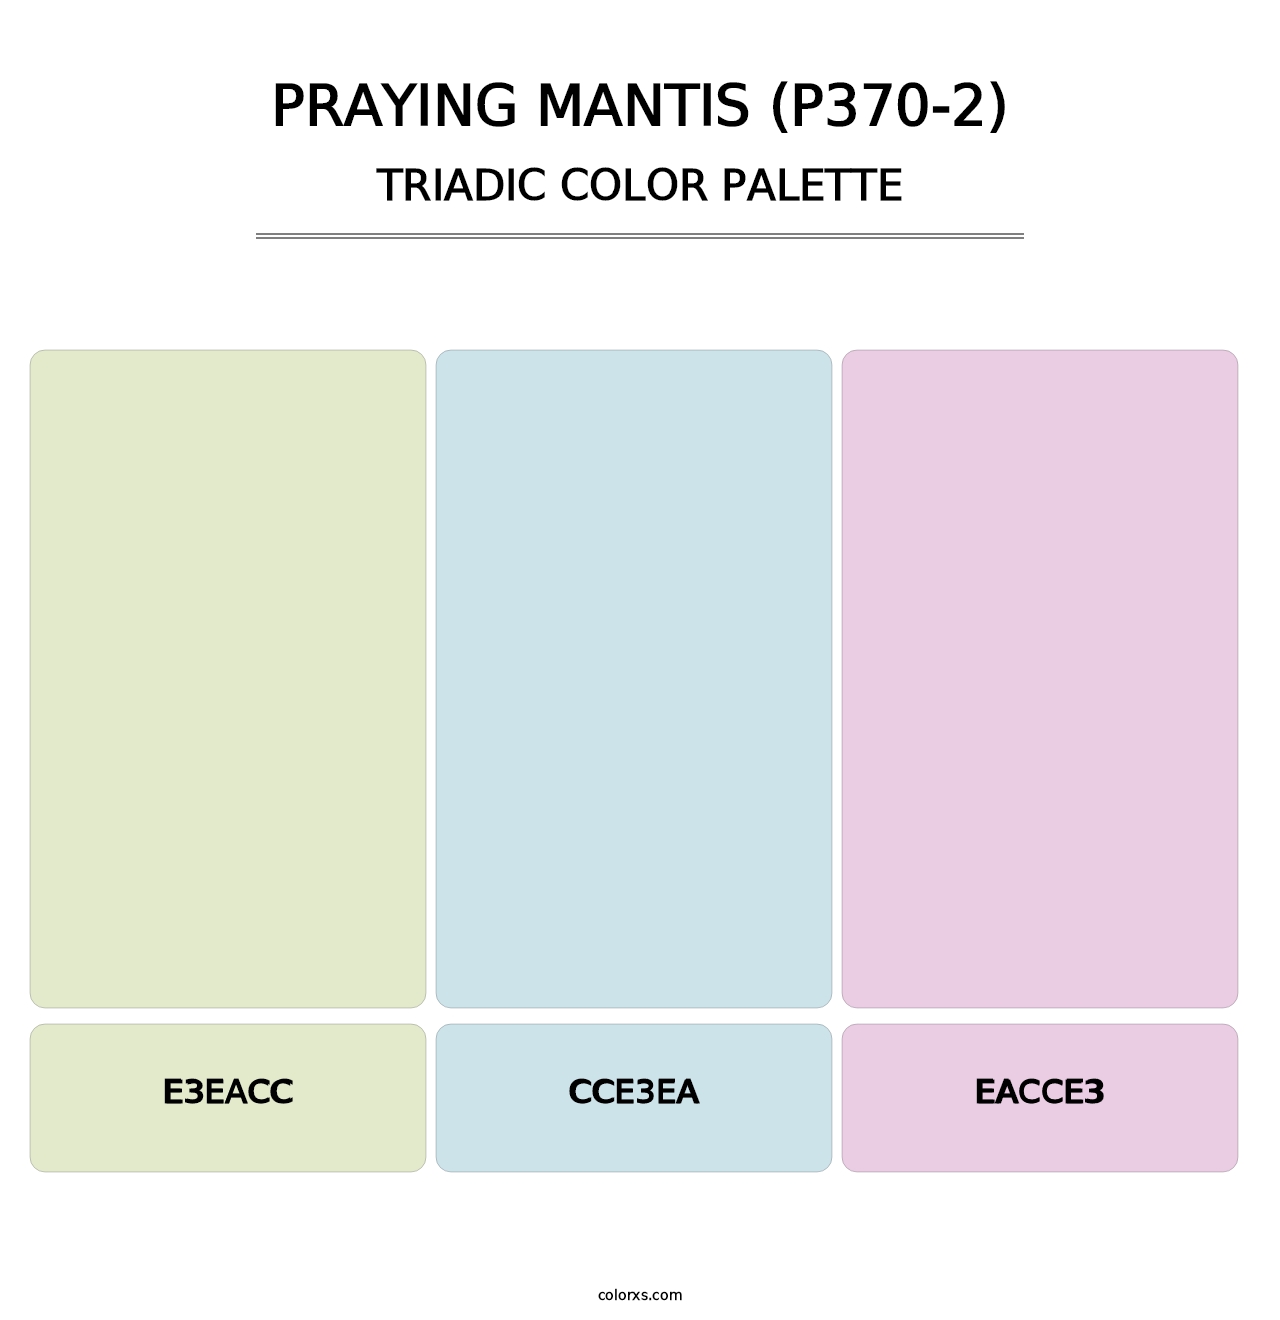 Praying Mantis (P370-2) - Triadic Color Palette